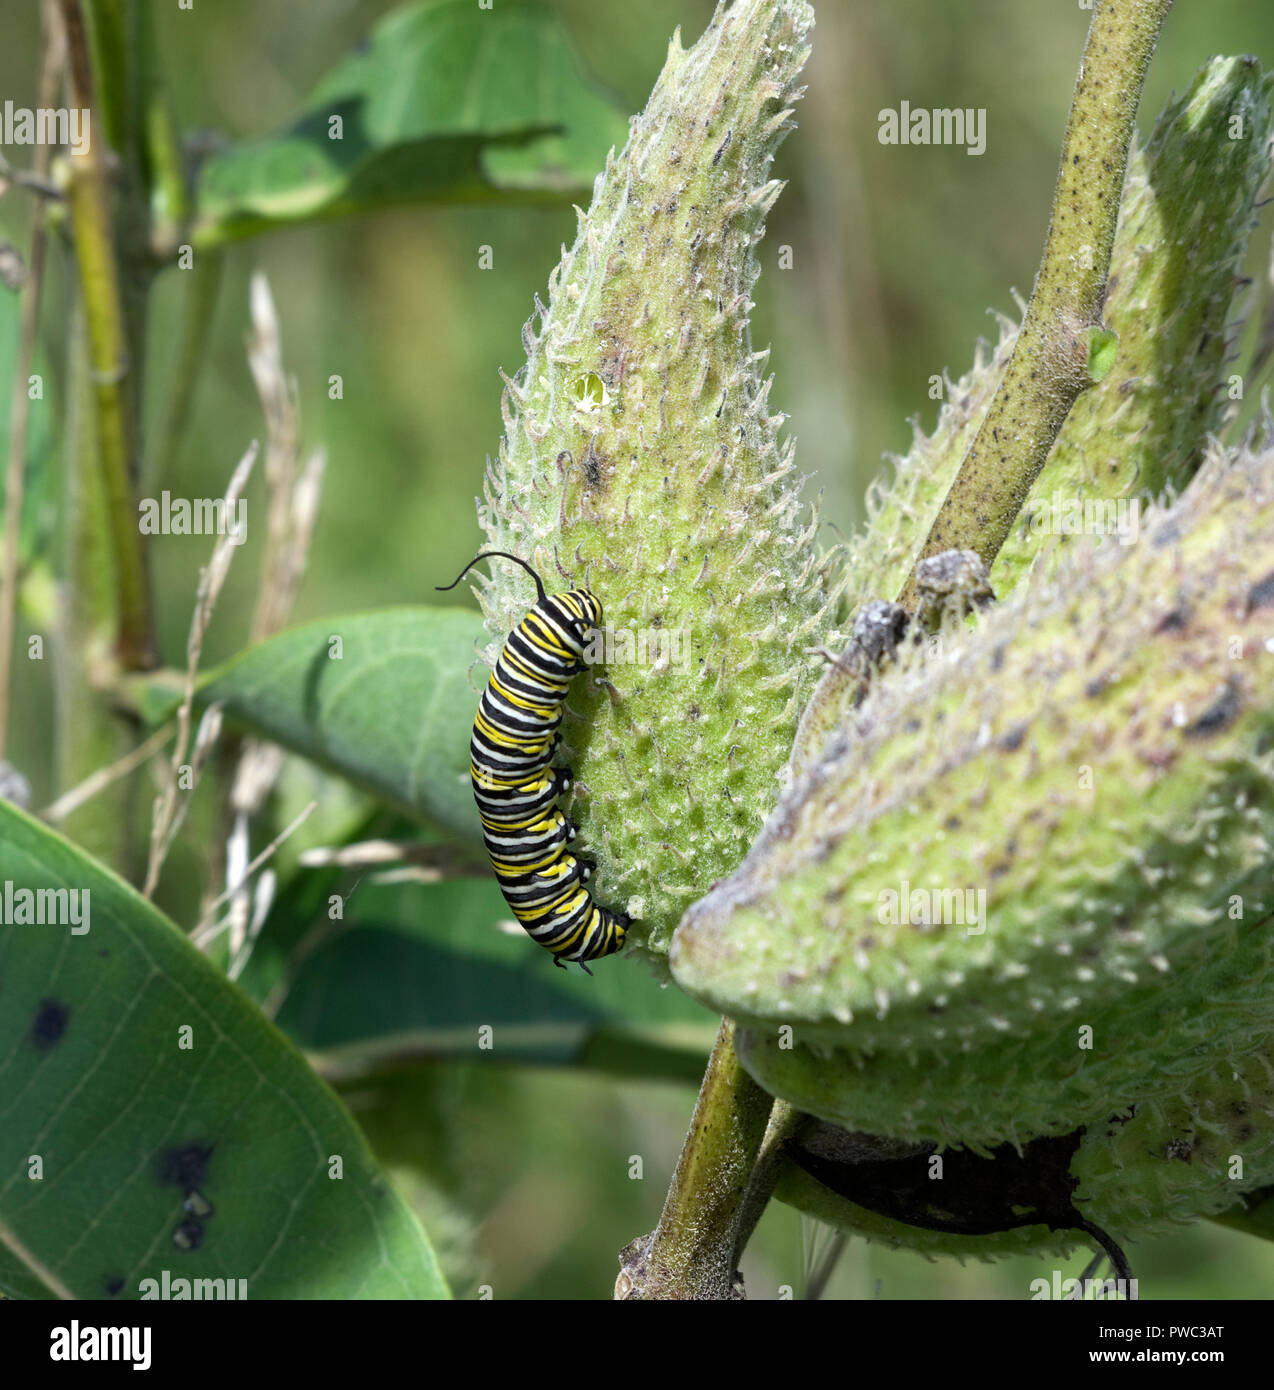 Larva caterpillar of Monarch Butterfly, Danaus plexippus on milkweed pod Stock Photo